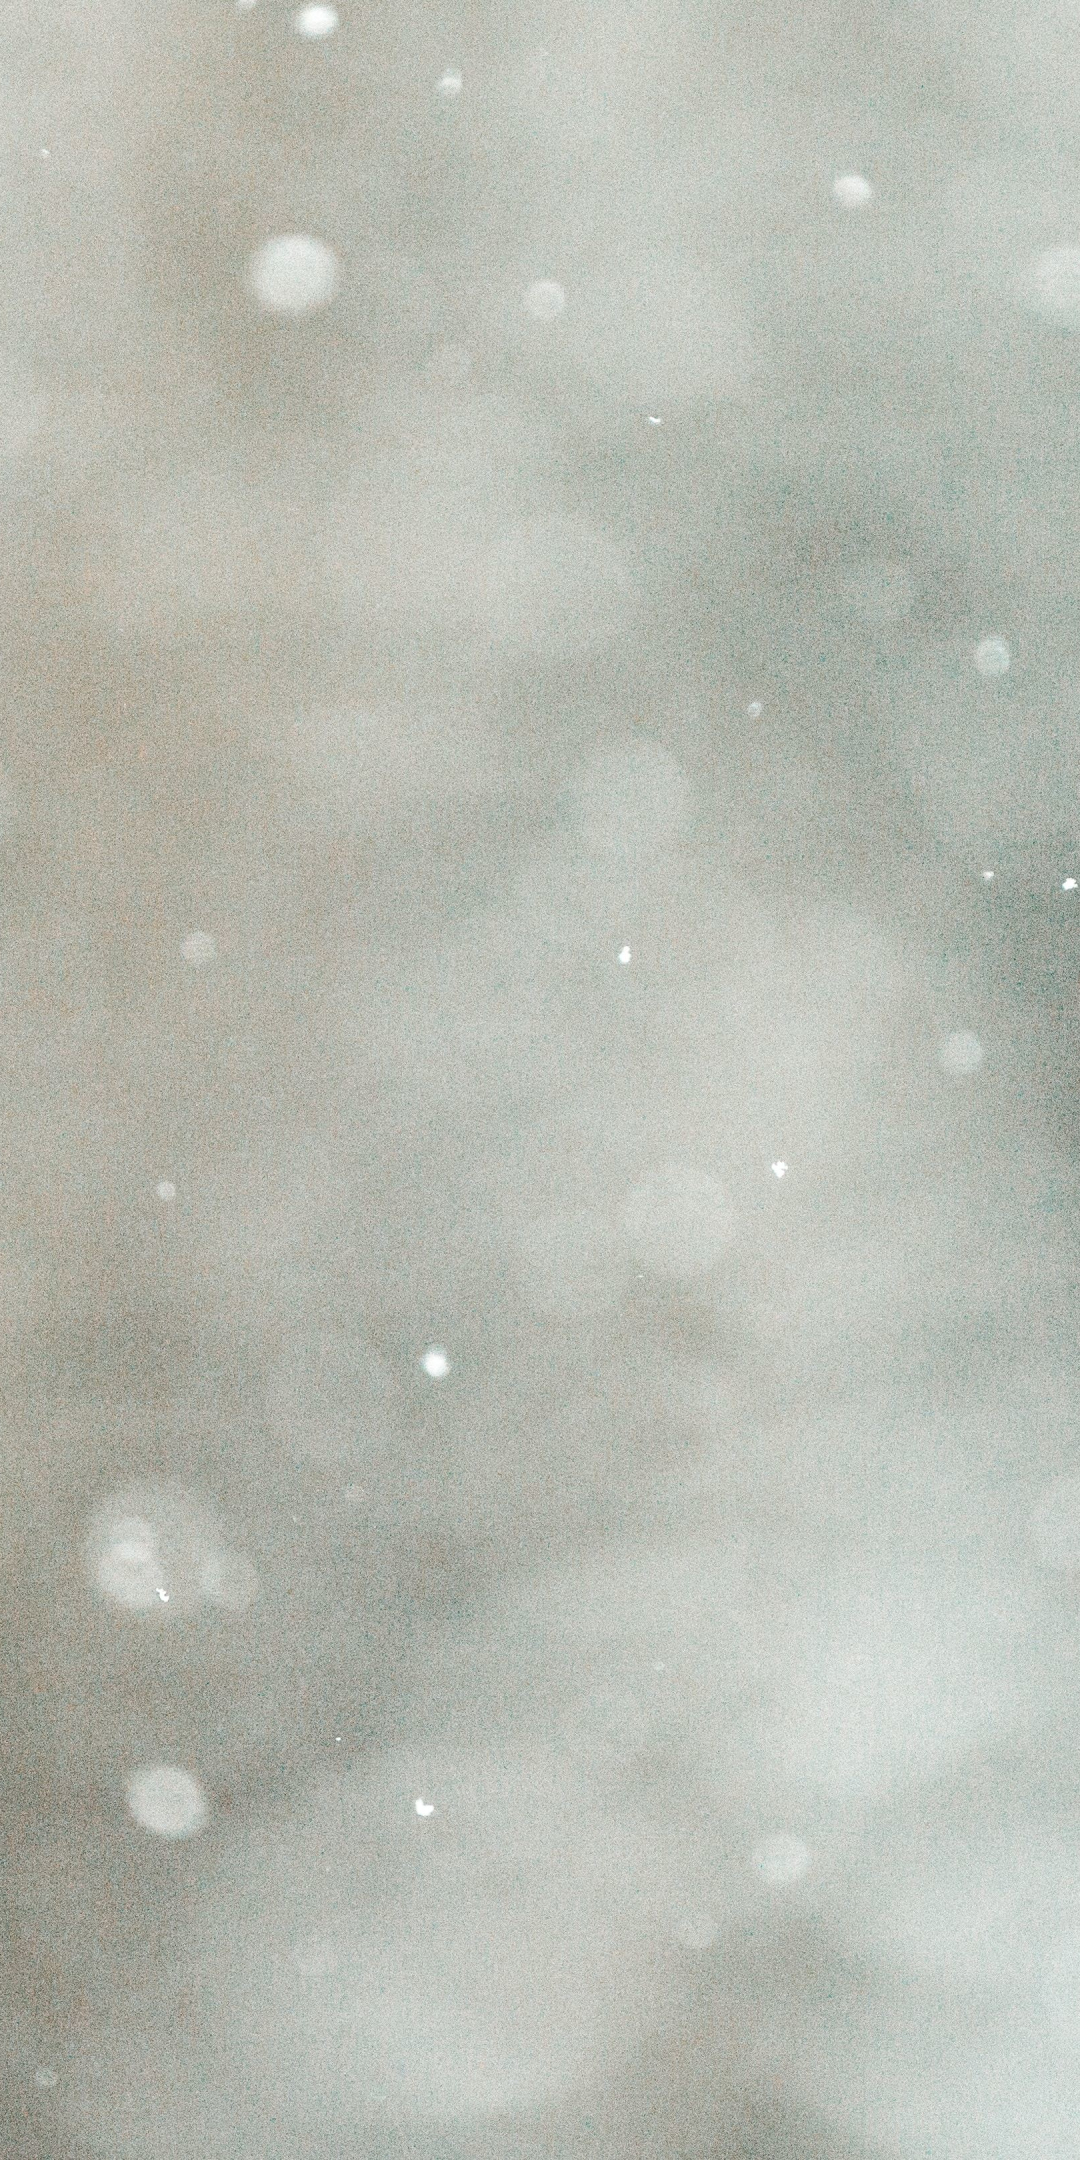 Bokeh, winter, foggy day, blur, 1080x2160 wallpaper